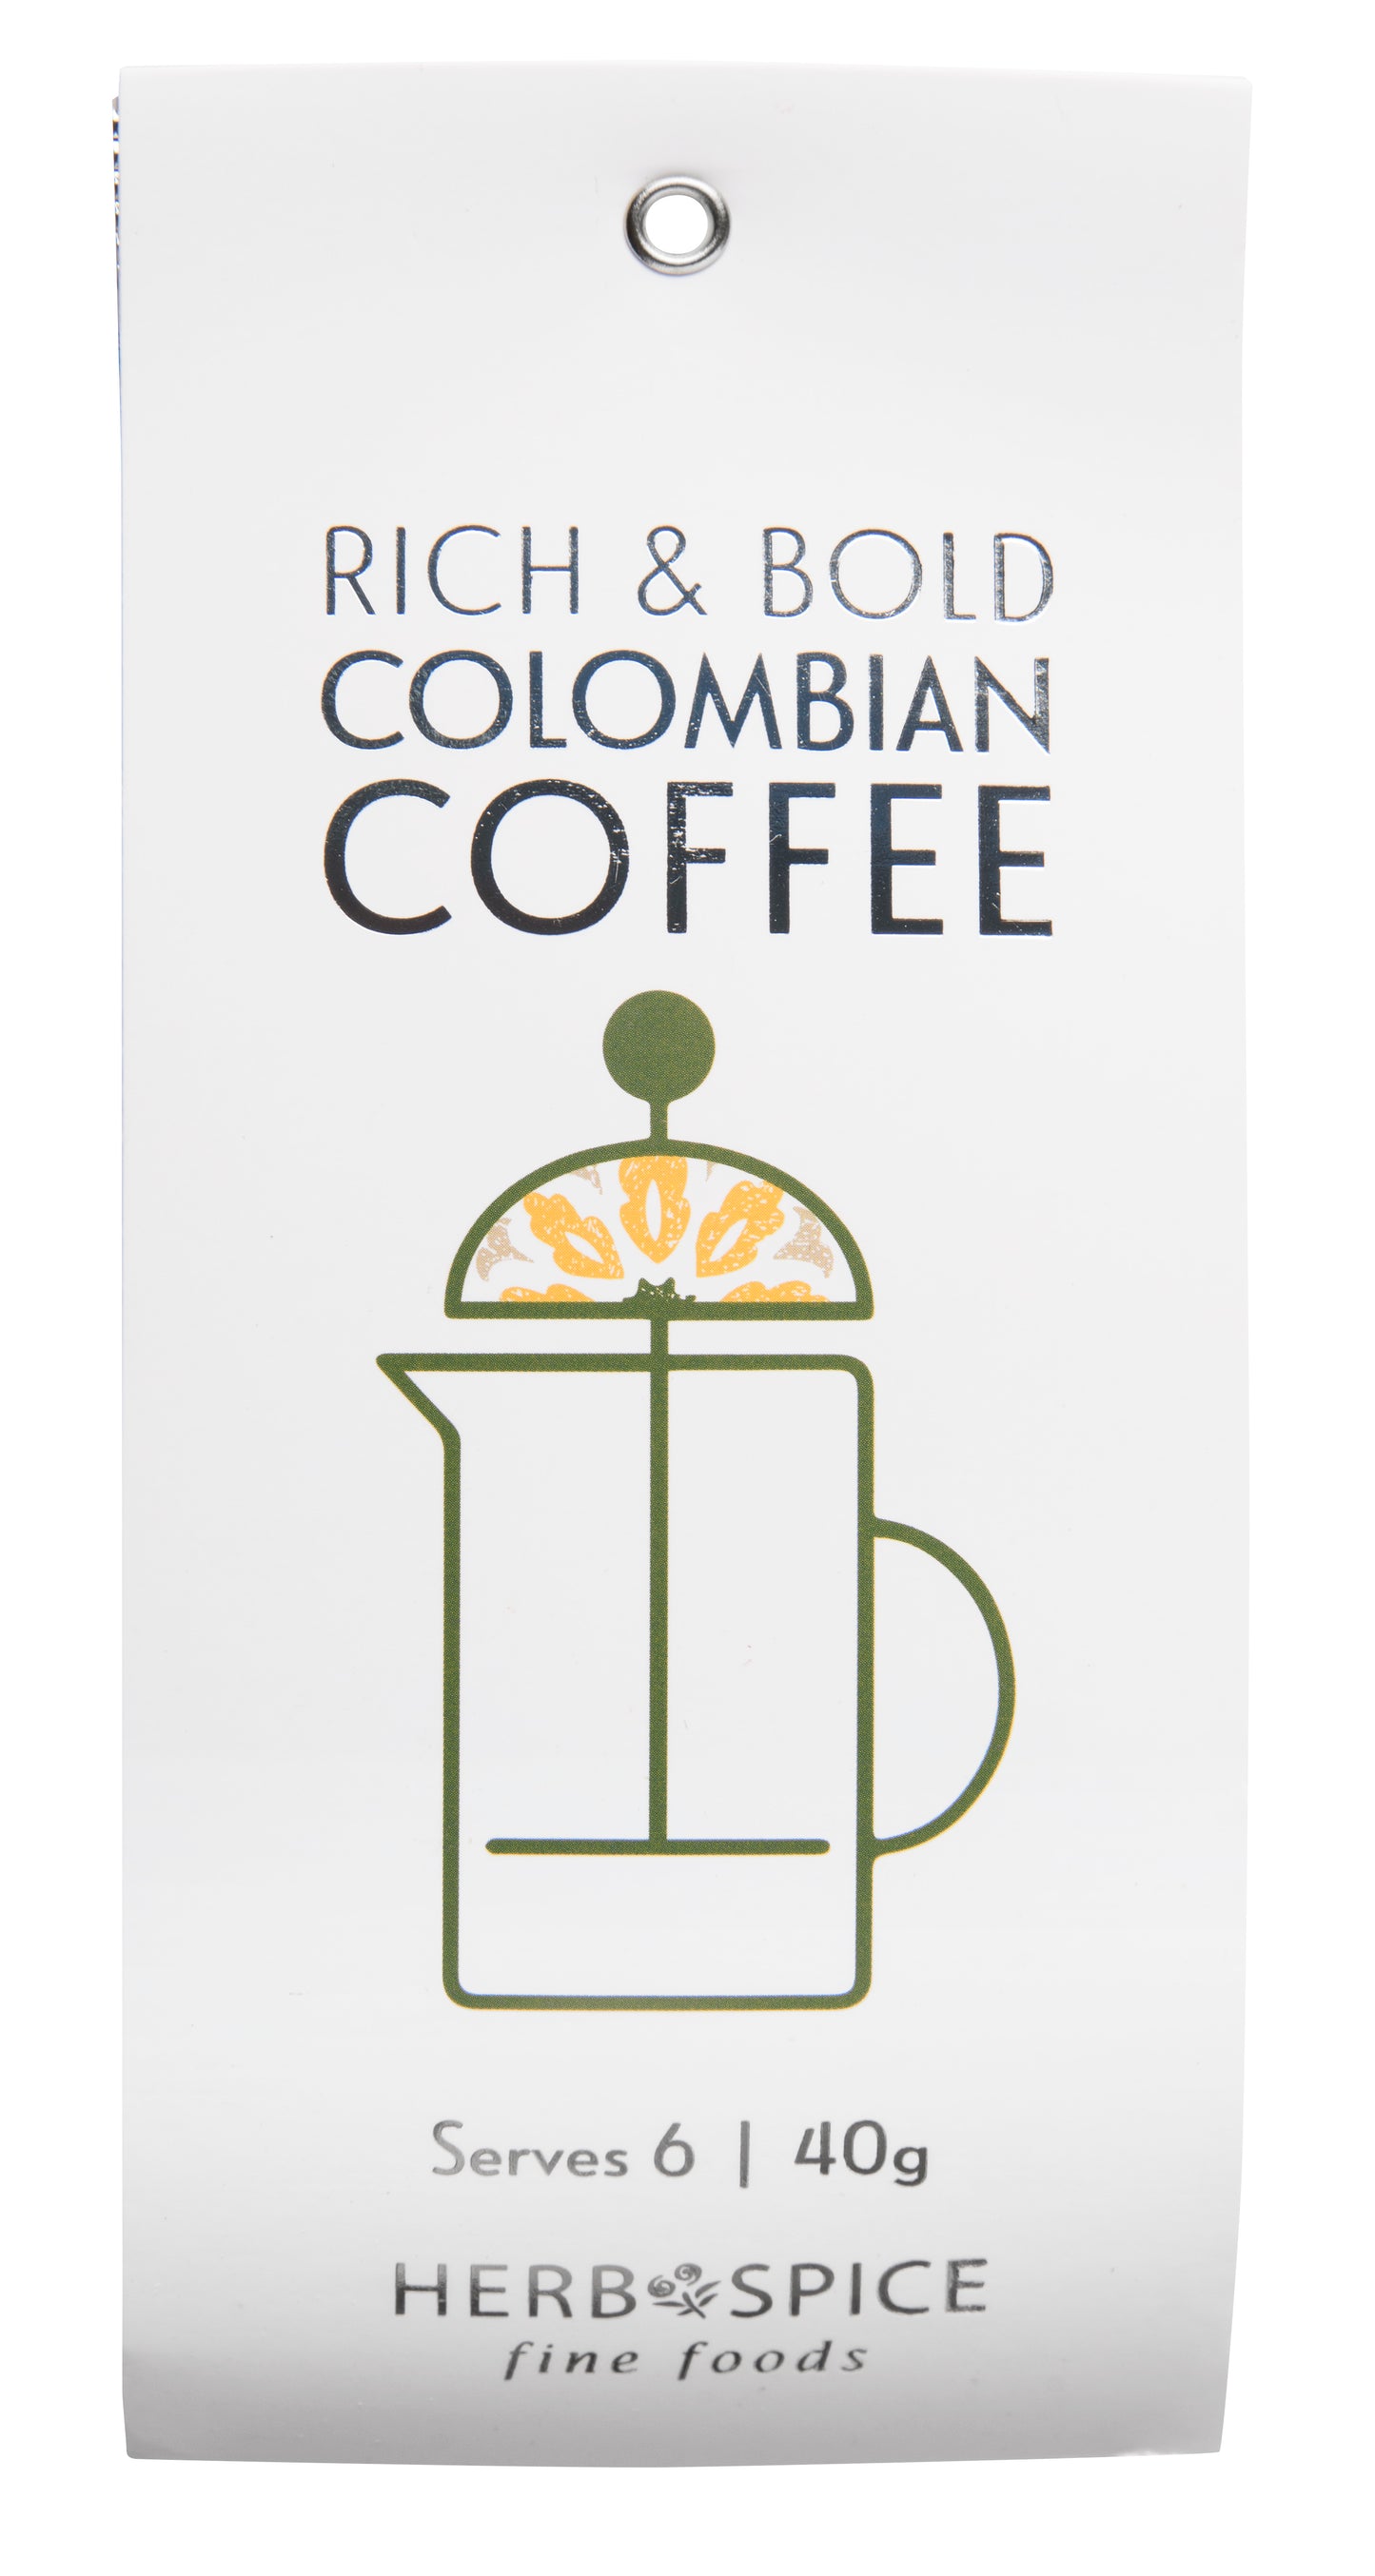 Columbian coffee